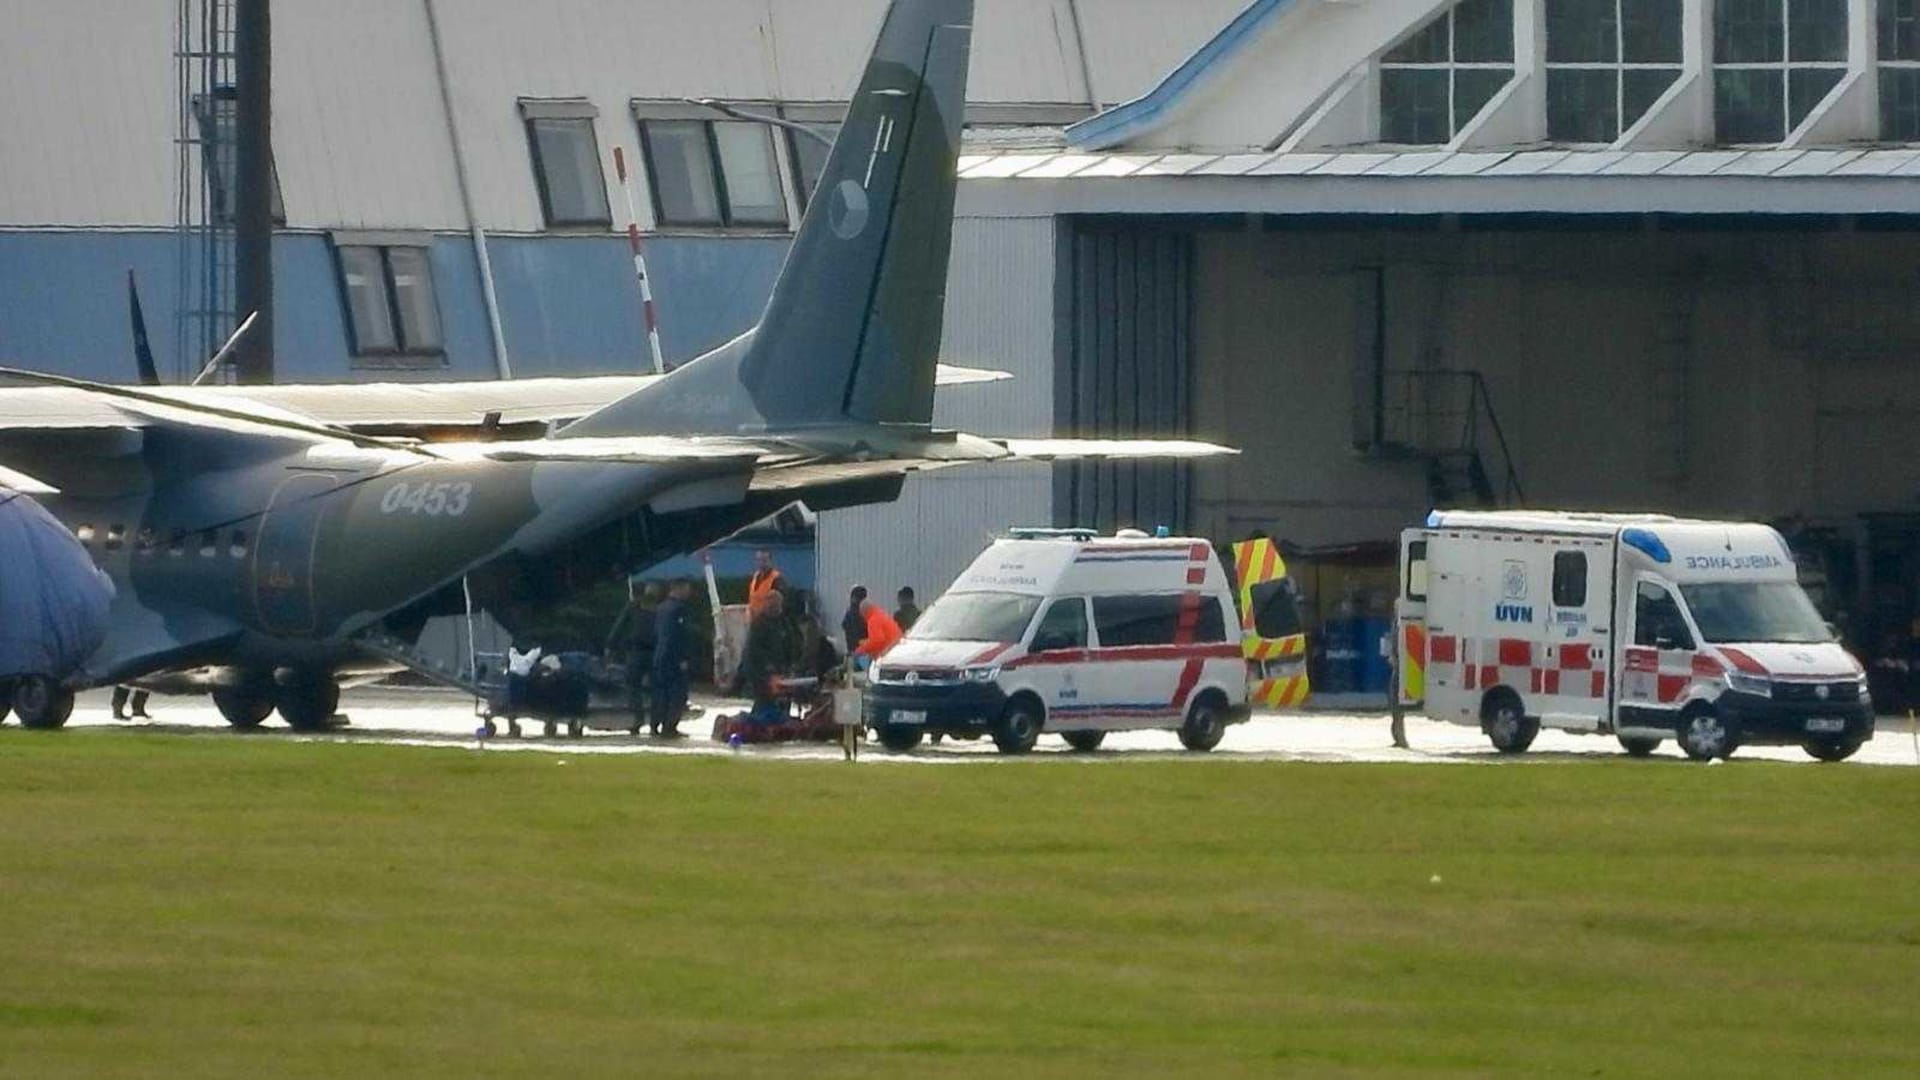 Zranění Češi byli letecky přepraveni do Prahy. Vozili pomoc na Ukrajinu, zranění mají z vážné autonehody.